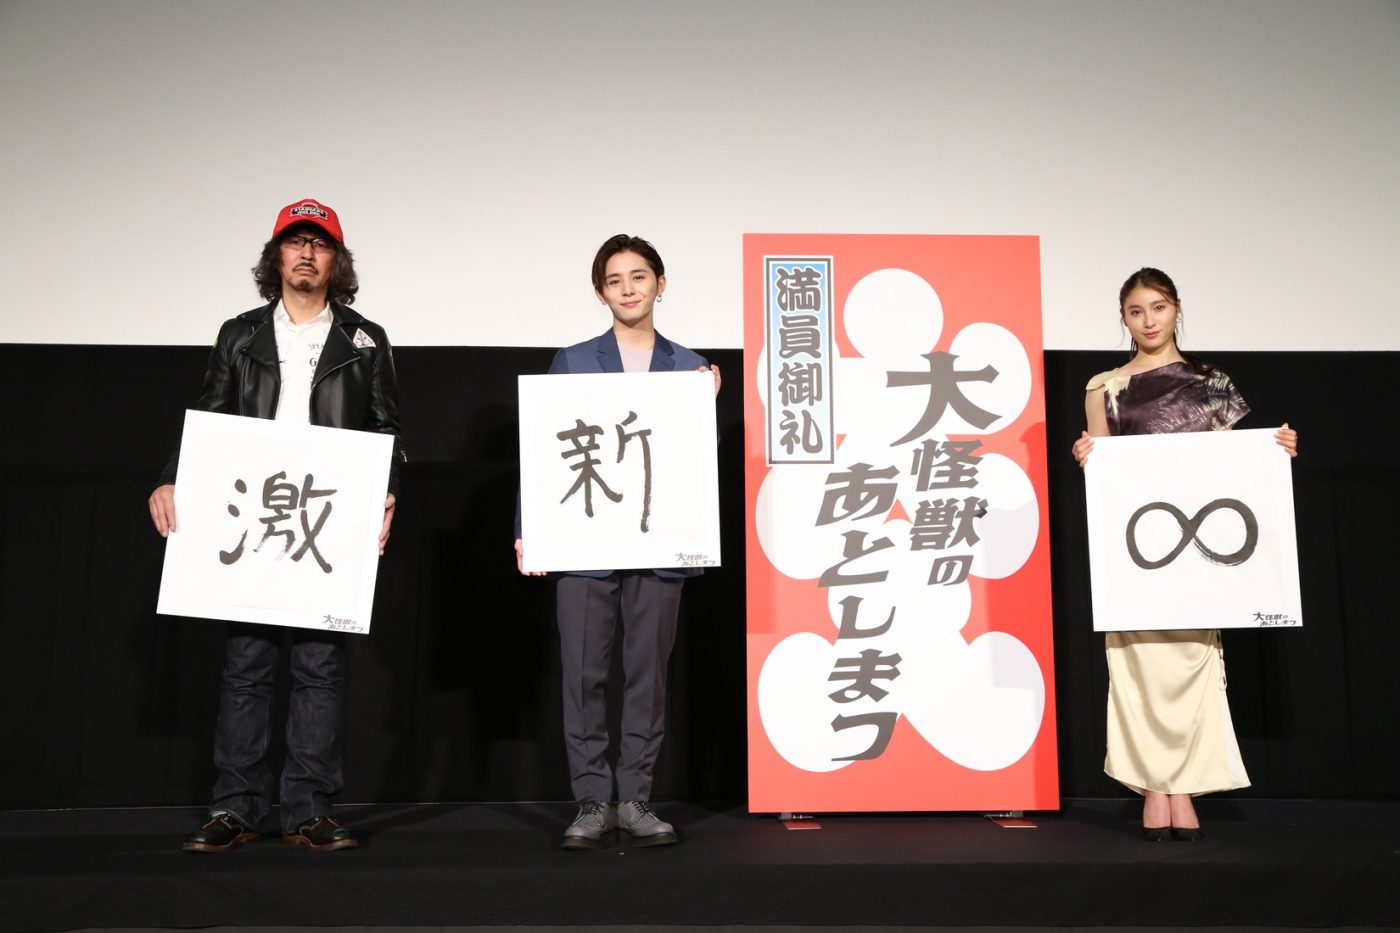 山田涼介、大ヒット中の映画『大怪獣のあとしまつ』についてメッセージ。「映画は観る人の自由」